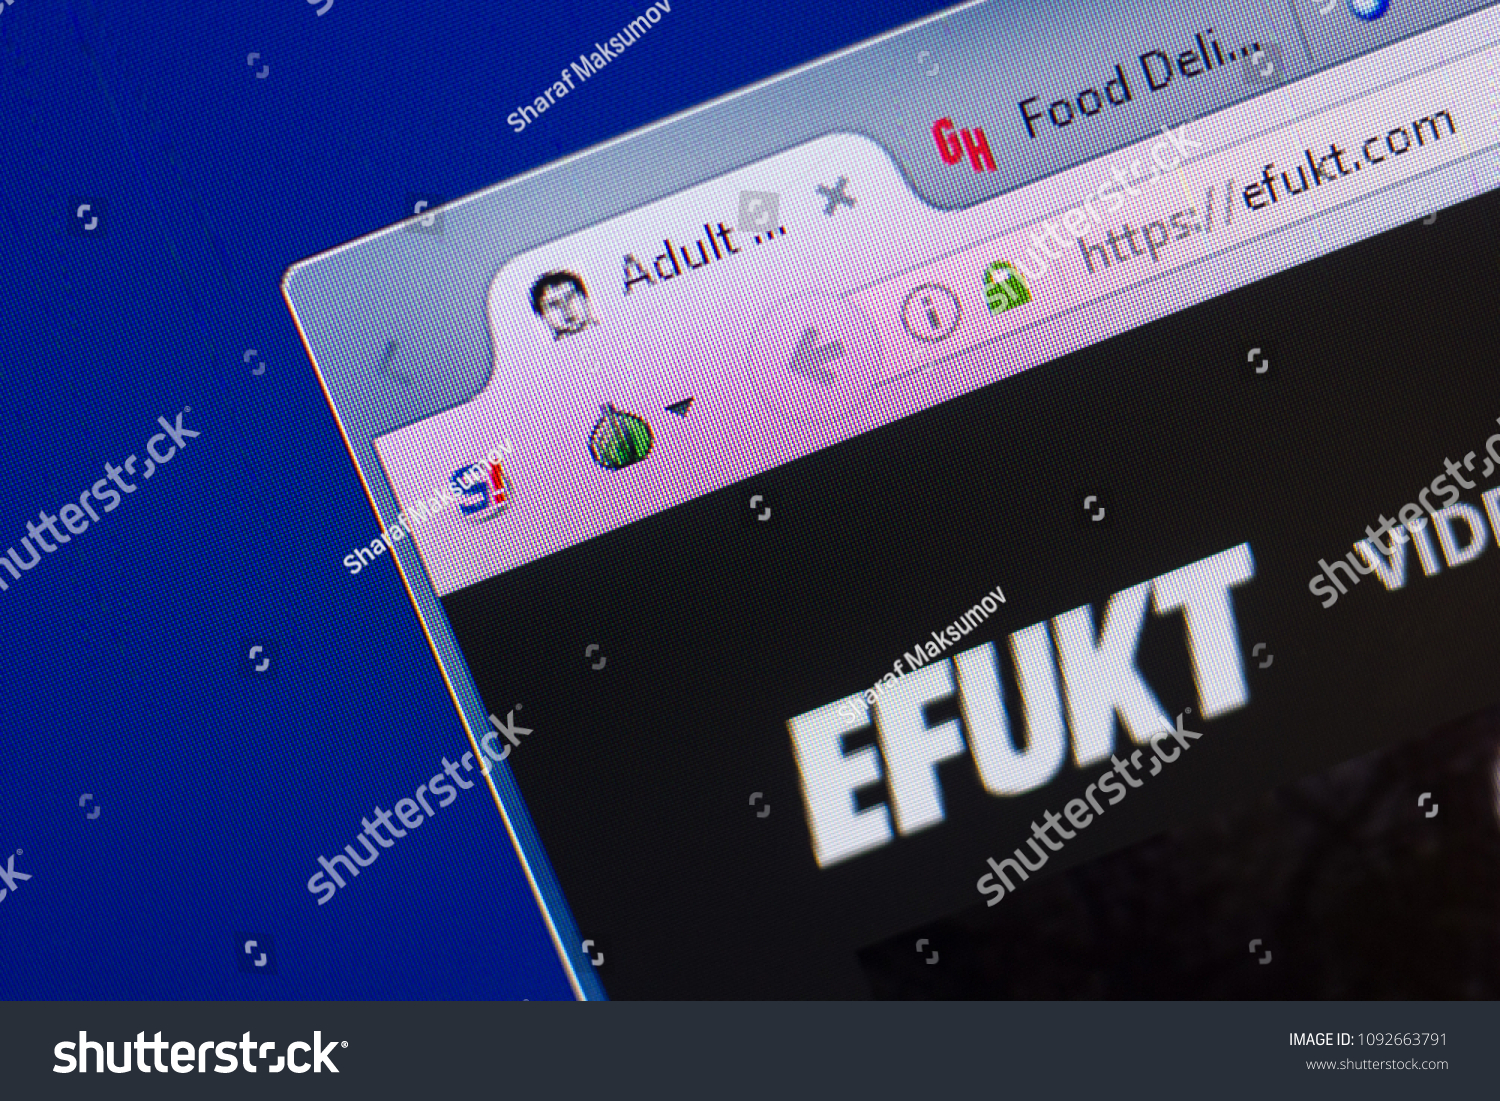 Eefukt